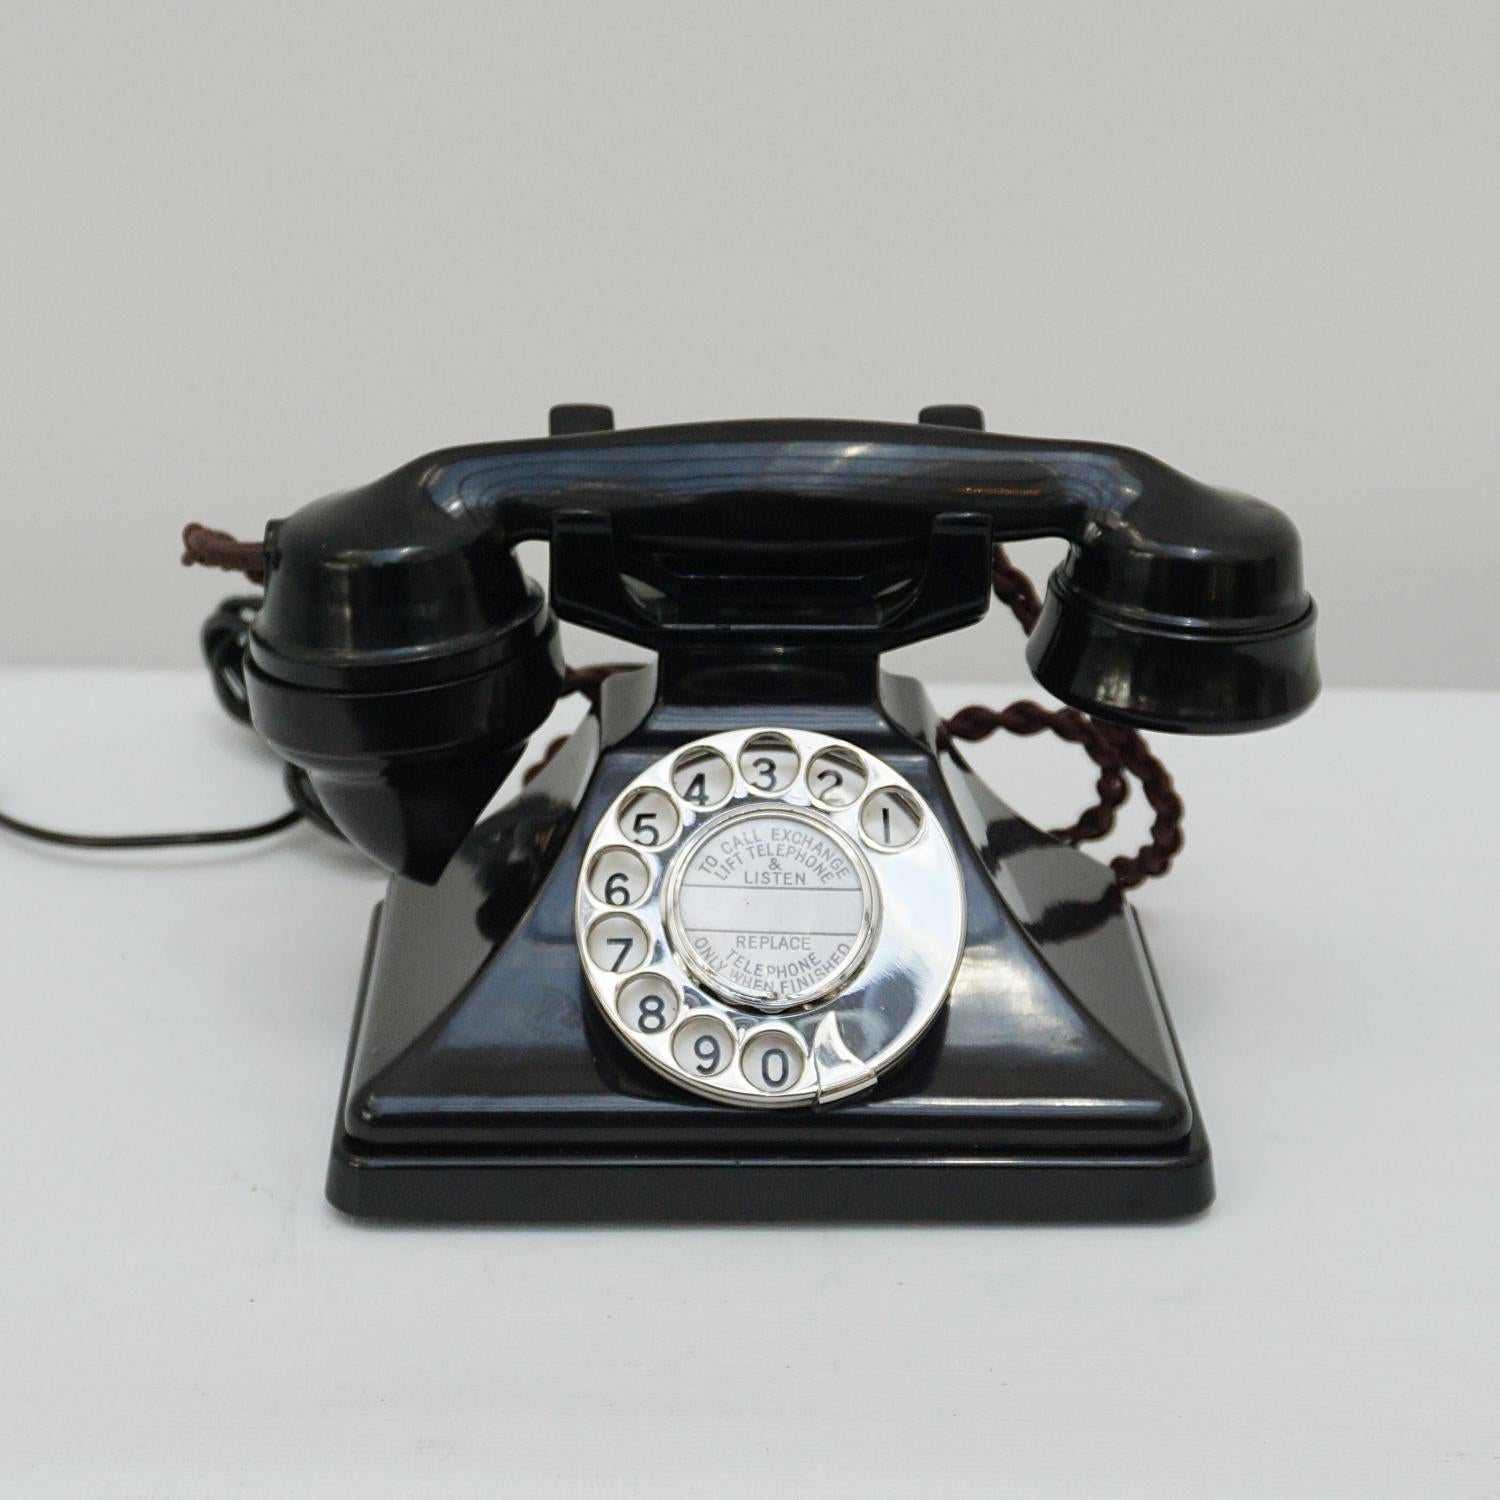 1934 telephone